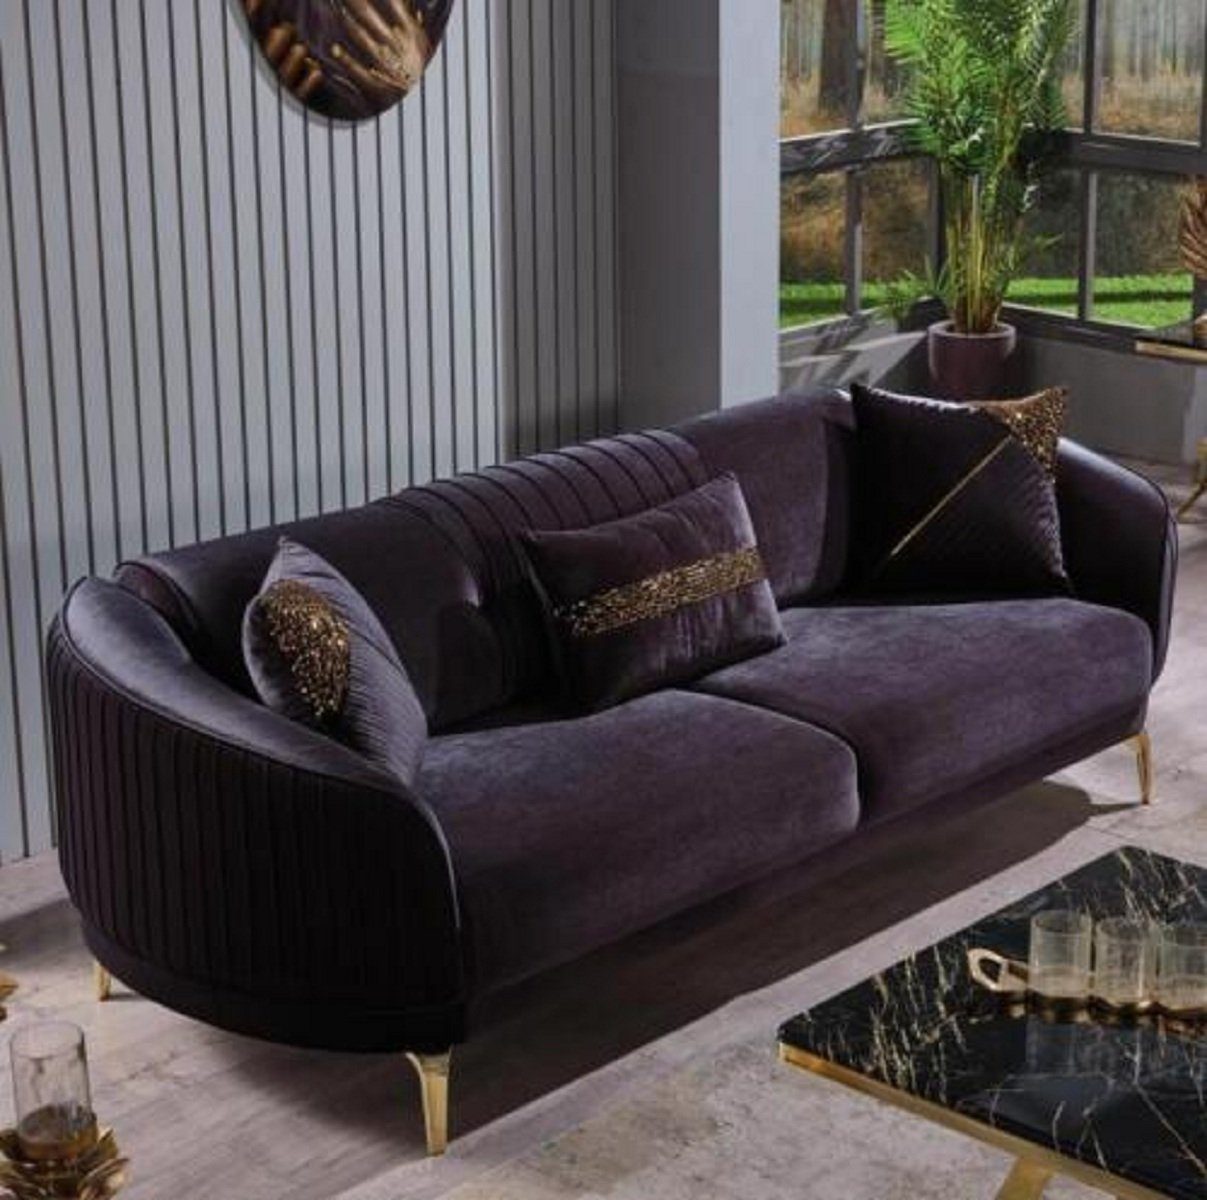 JVmoebel 3-Sitzer Dreisitzer Sofa Moderne Wohnzimmer Couch Schwarz Designer Polstersofas, 1 Teile, Made in Europa